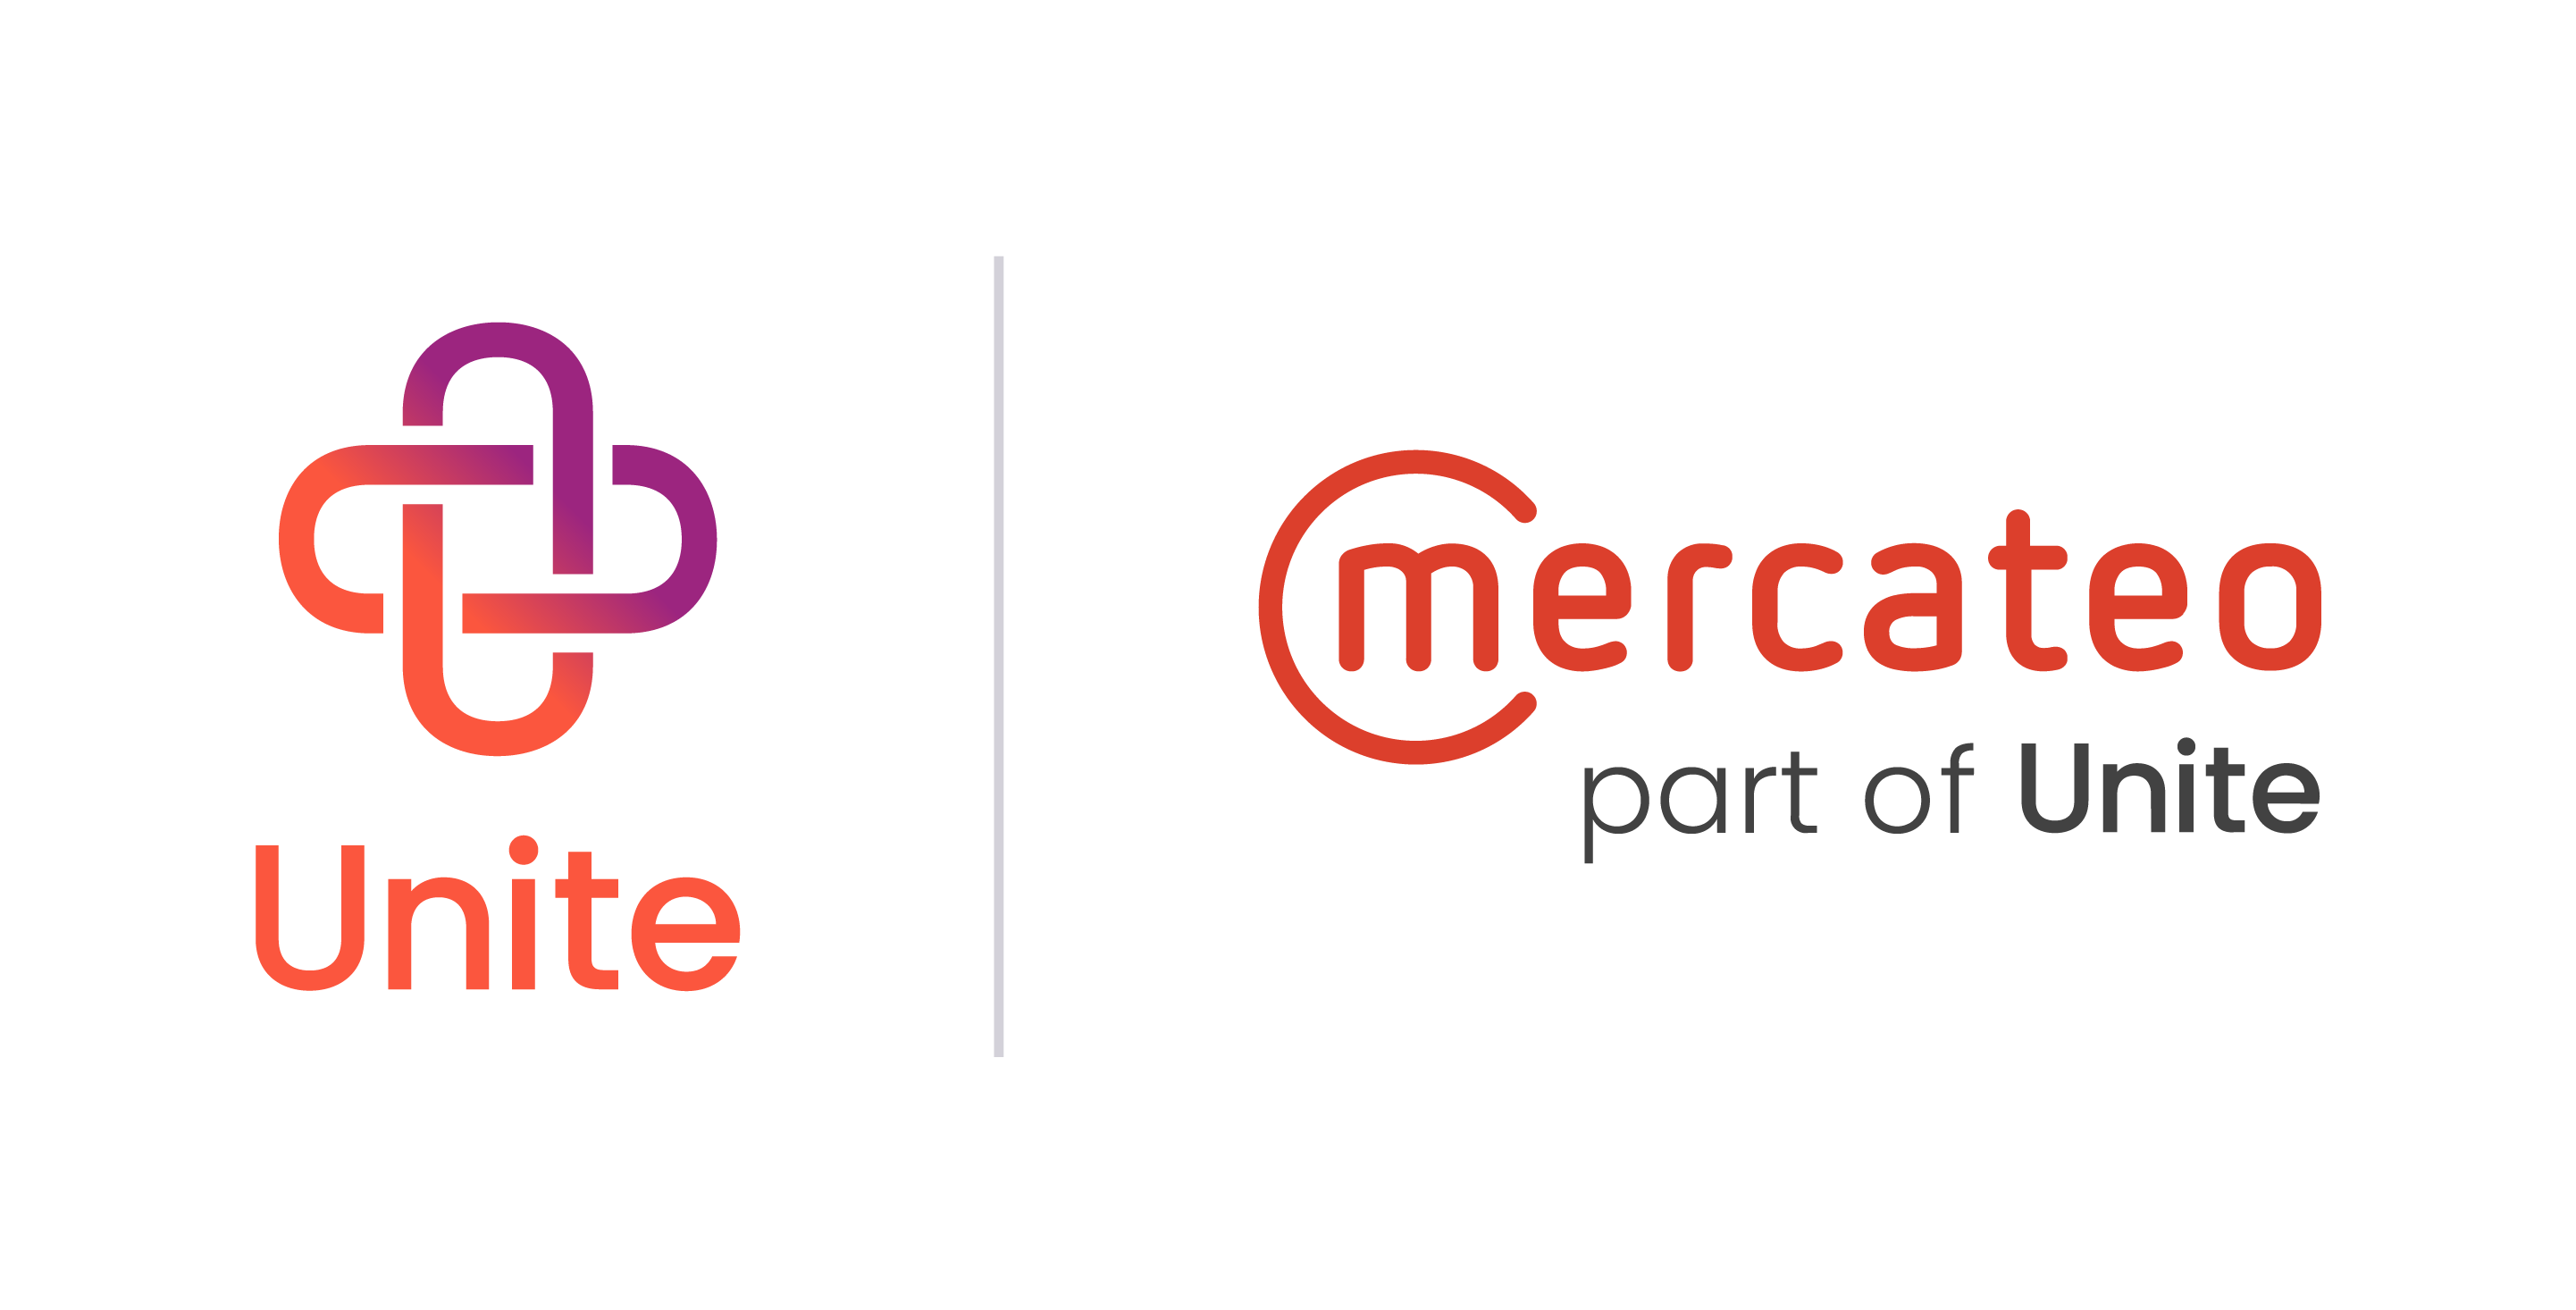 Die Firmenlogos von Unite und Mercateo nebeneinander.